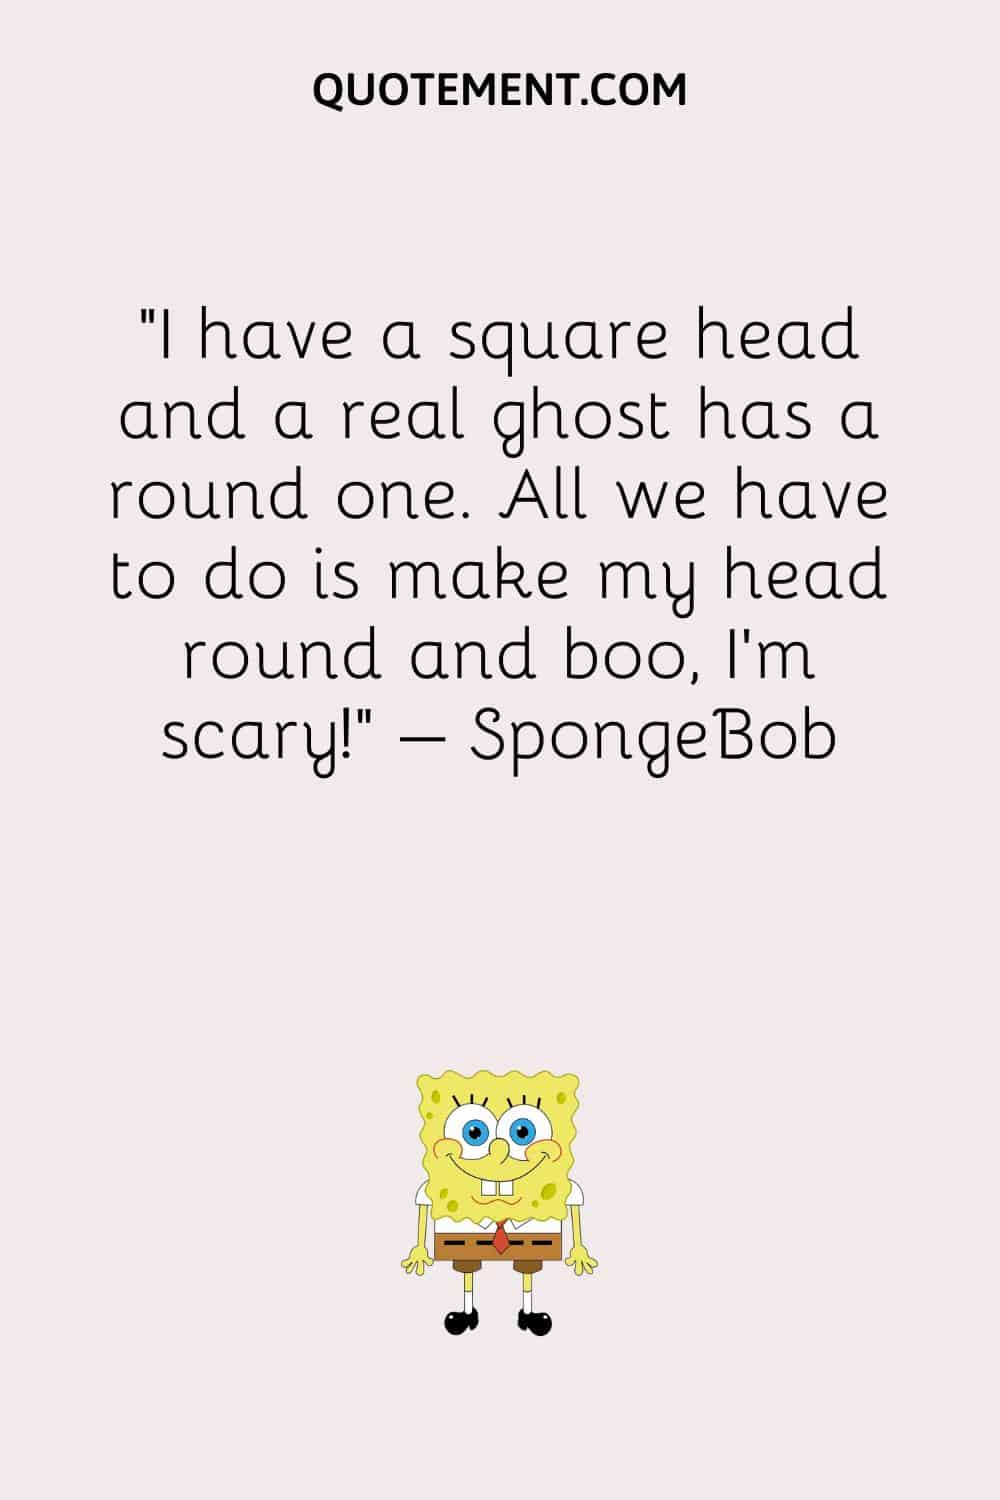 Illustration representing funniest SpongeBob quote and SpongeBob smiling.